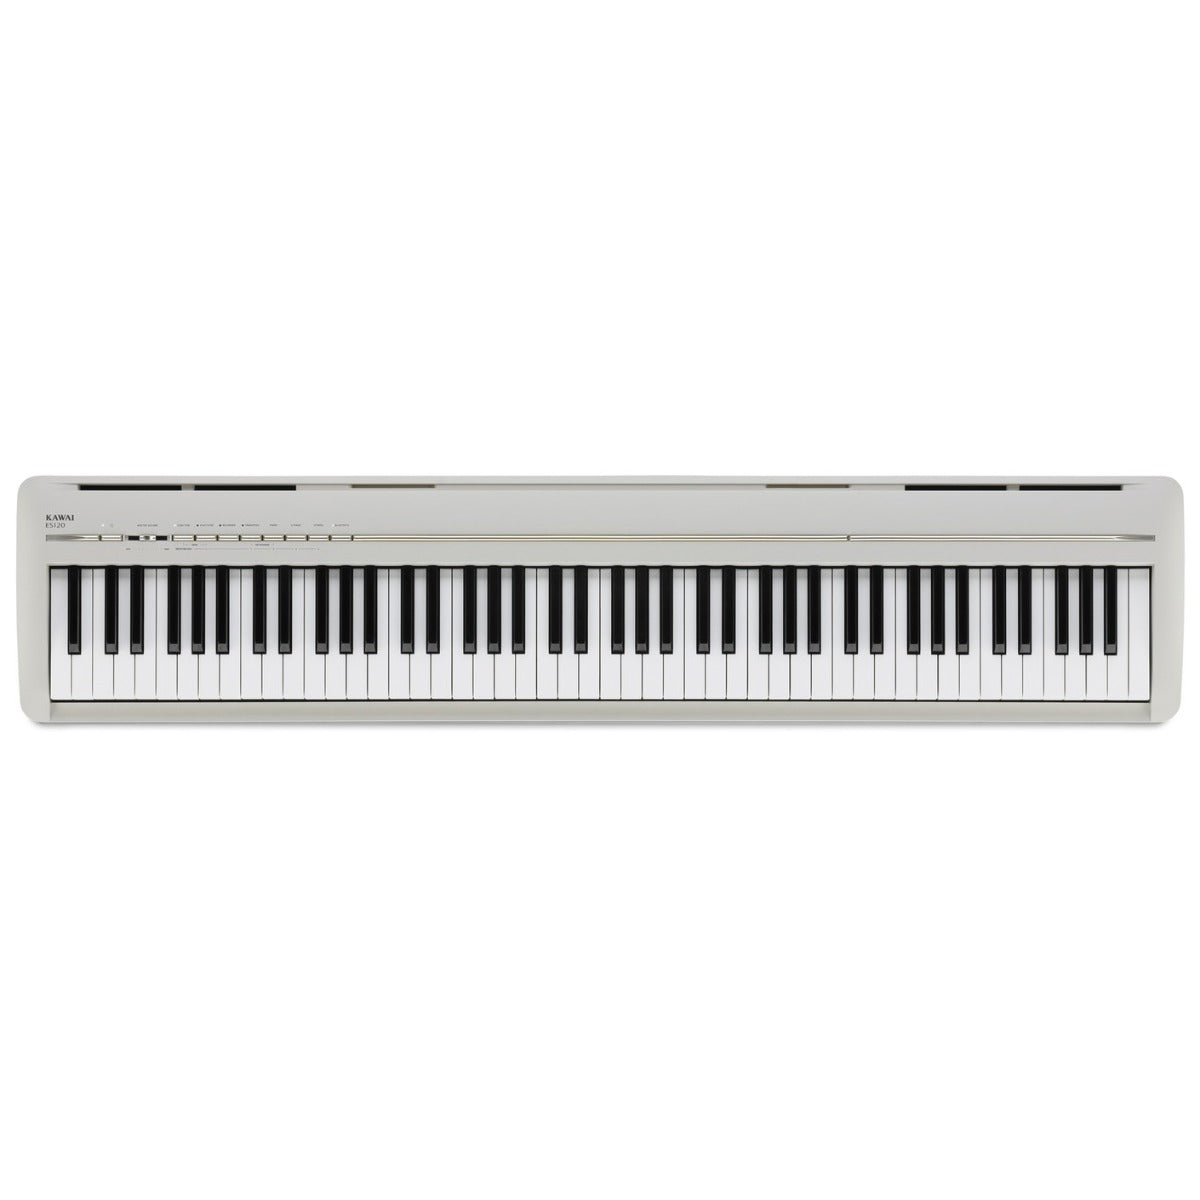 Kawai ES120 Portable Digital Piano - Light Grey STAGE ESSENTIALS BUNDLE